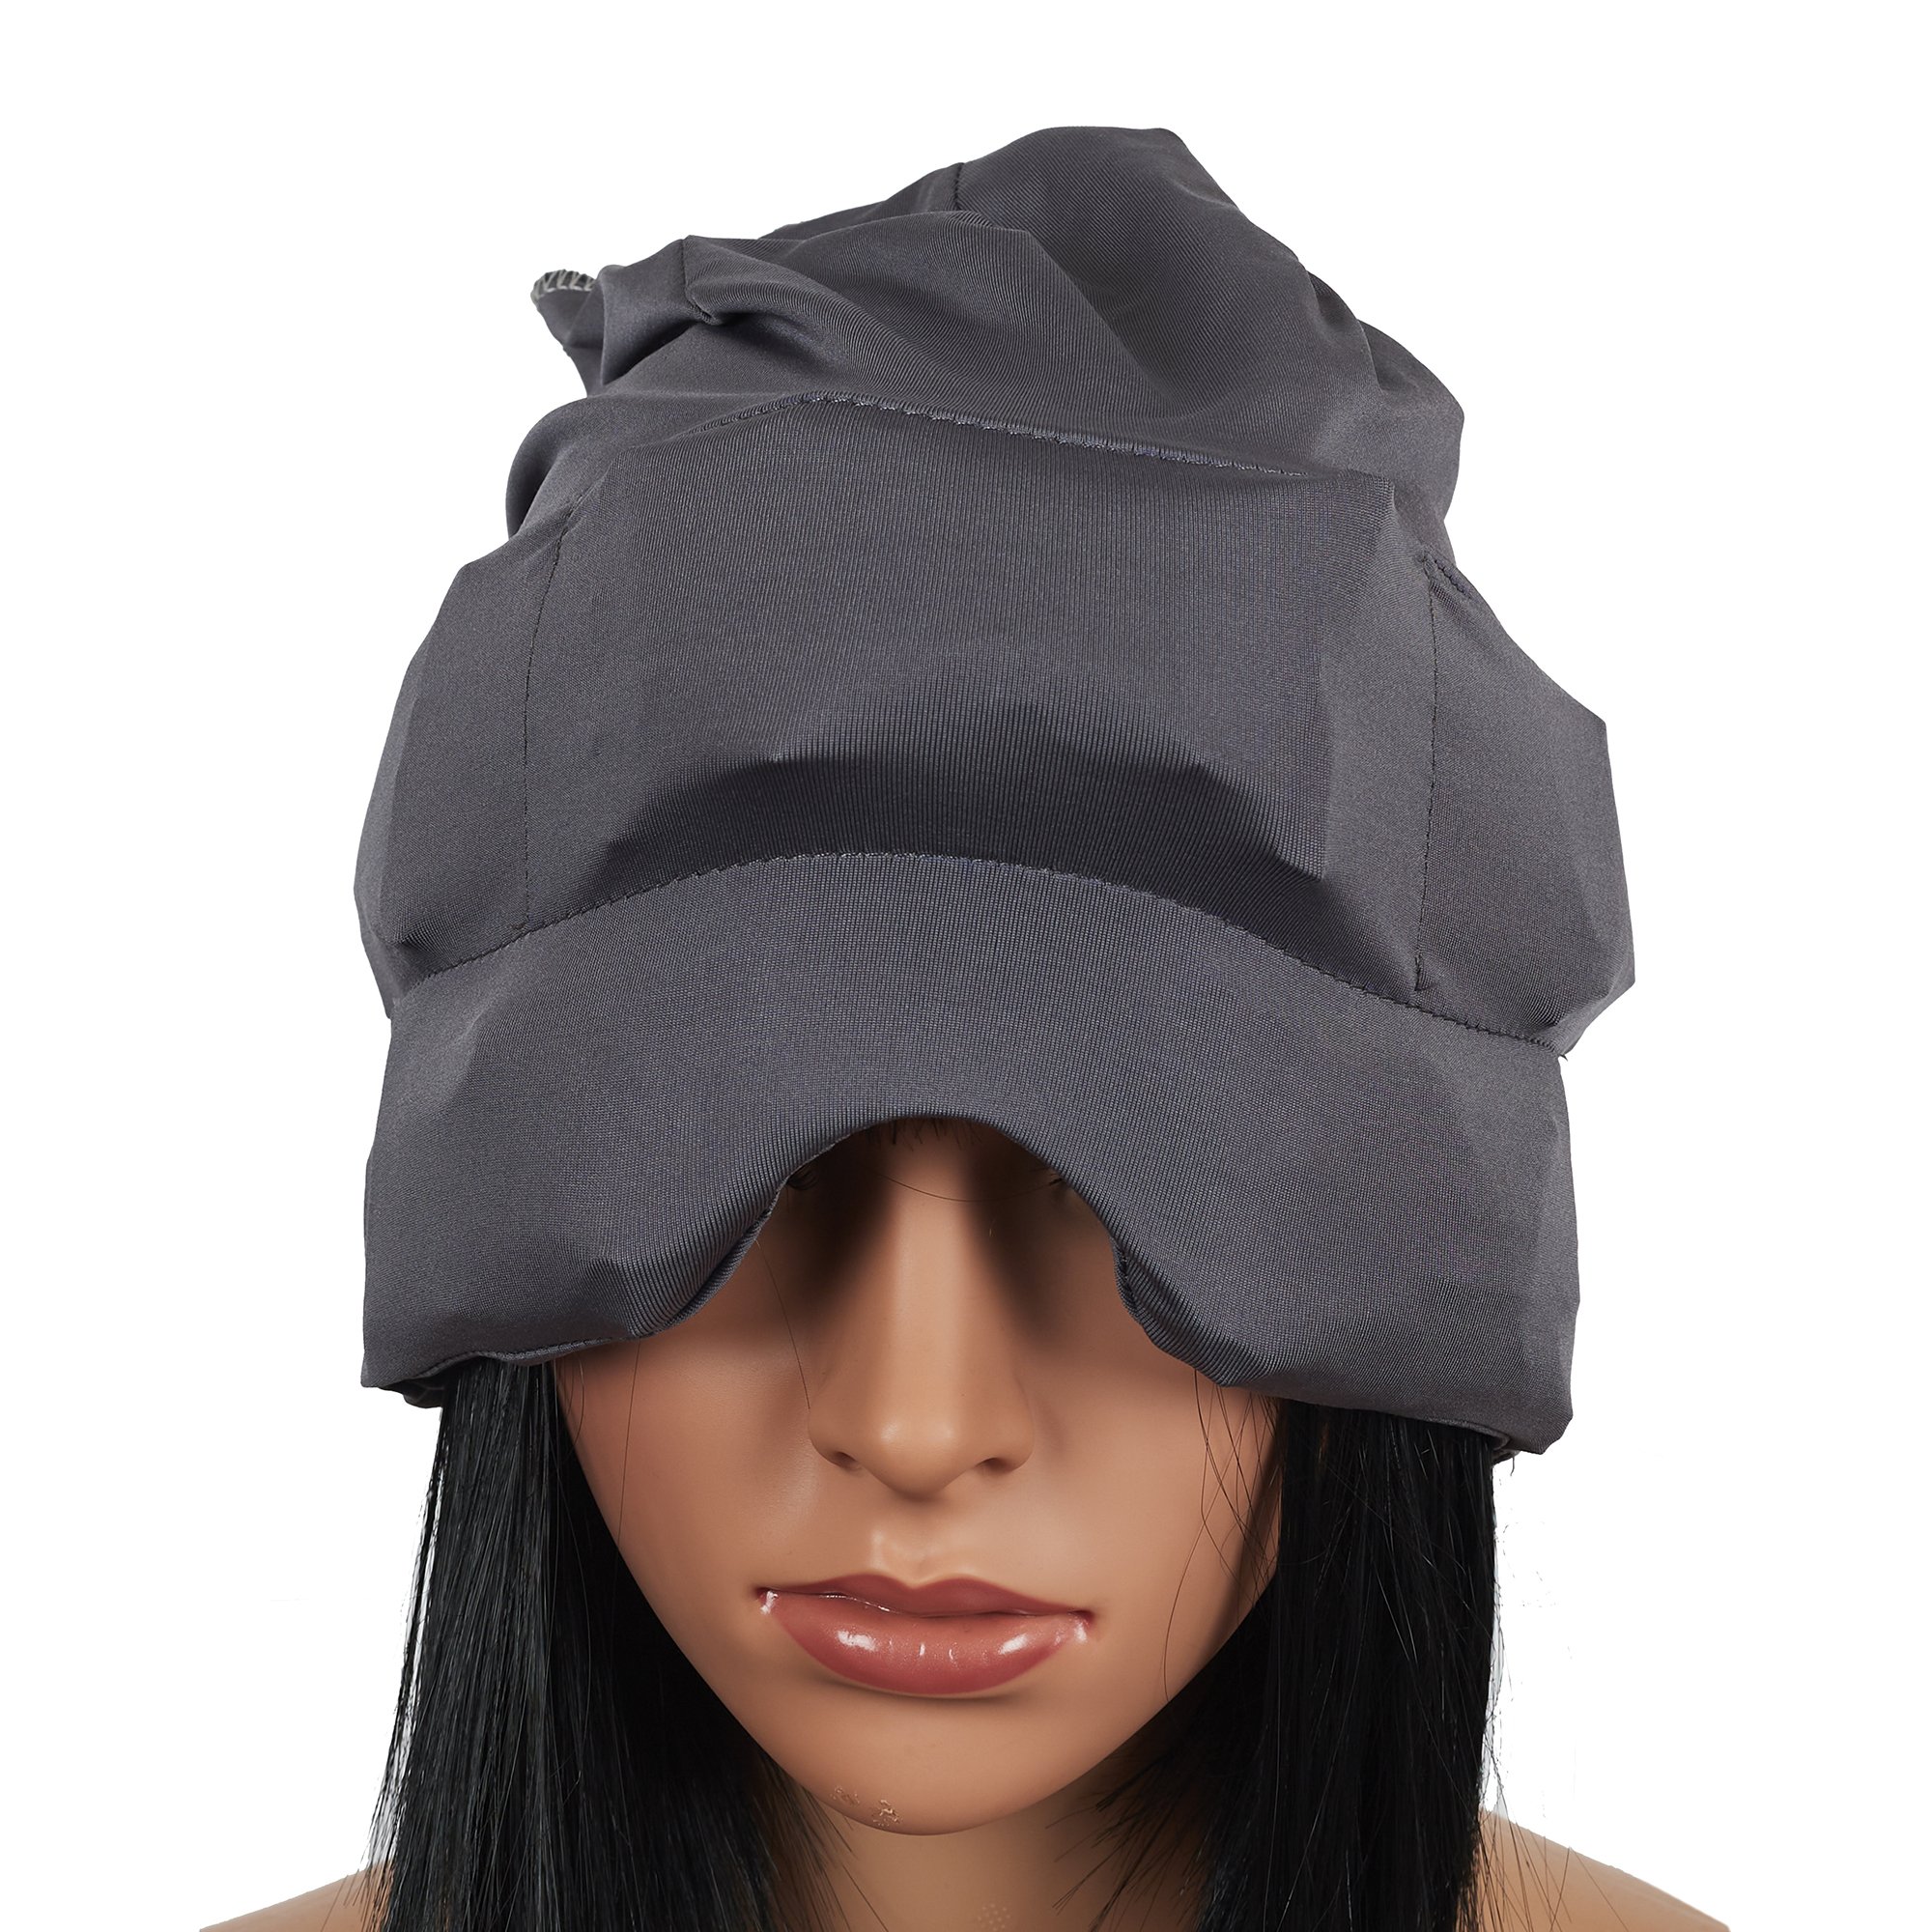 Bonnet anti migraine - Bonnet Migraine Relief Cap - Réutilisable Ma